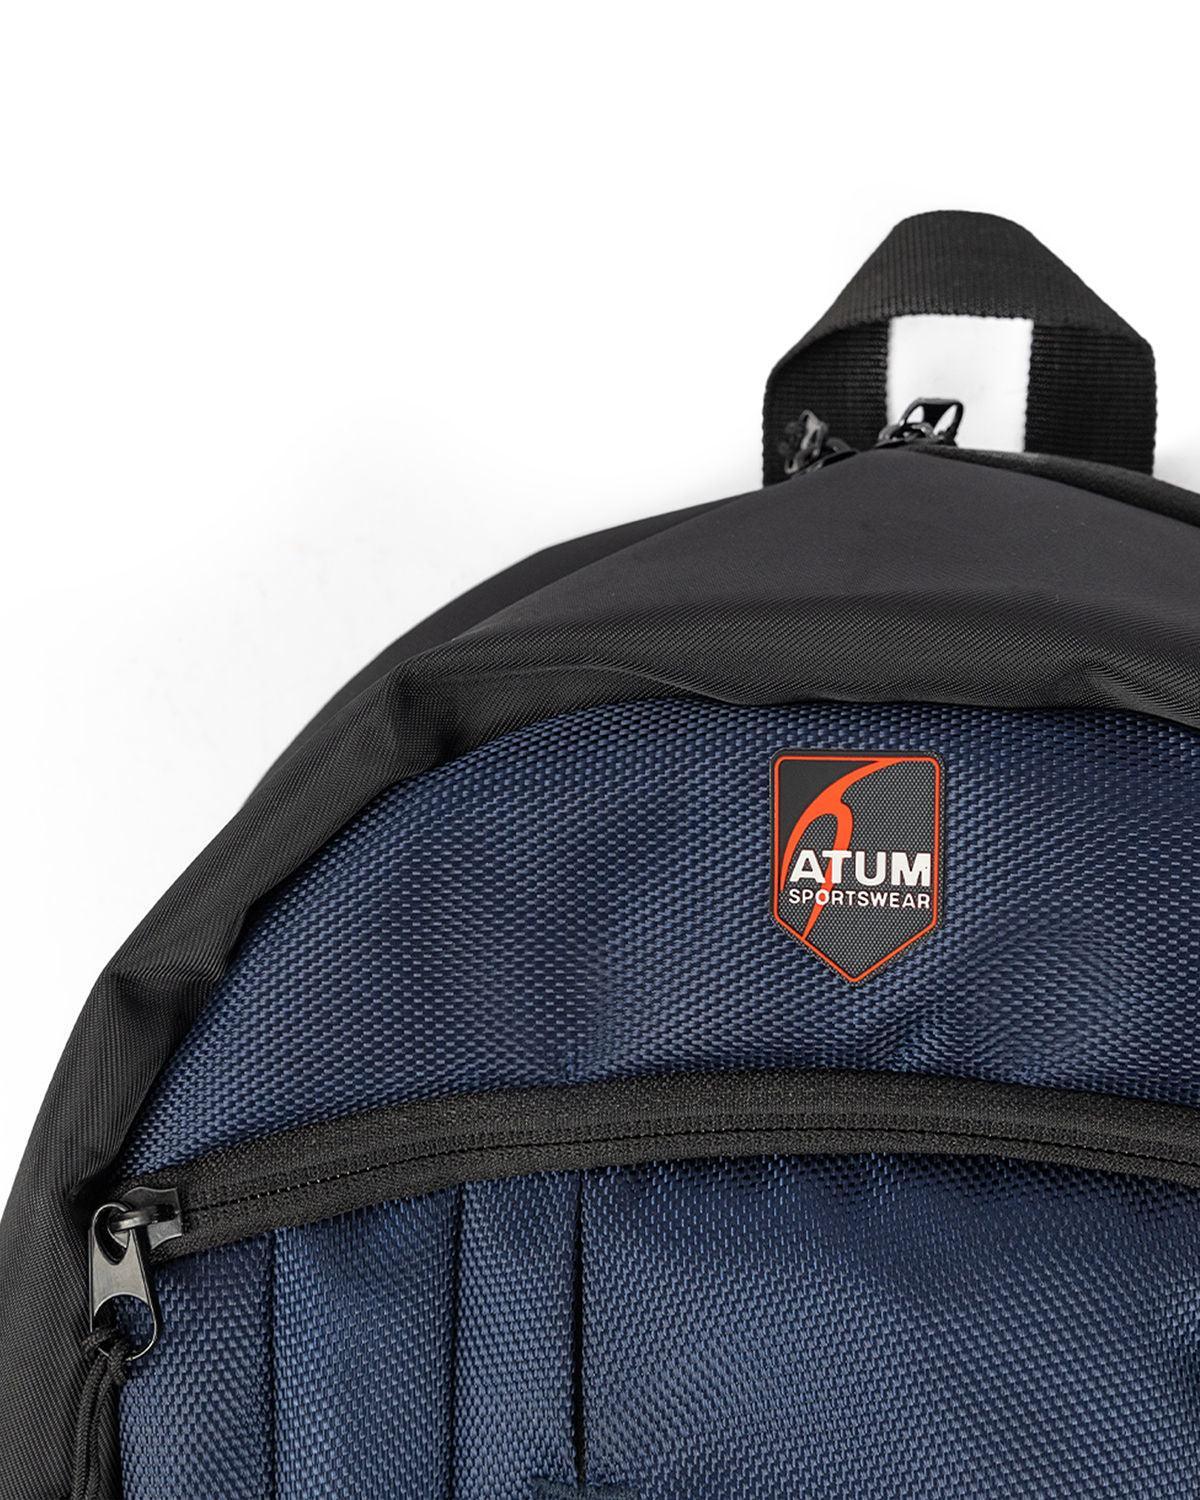 Photo by ð—”ð—§ð—¨ð— SPORTSWEAR Â® on December 26, 2022. May be a navy premium backpack with atum logo.